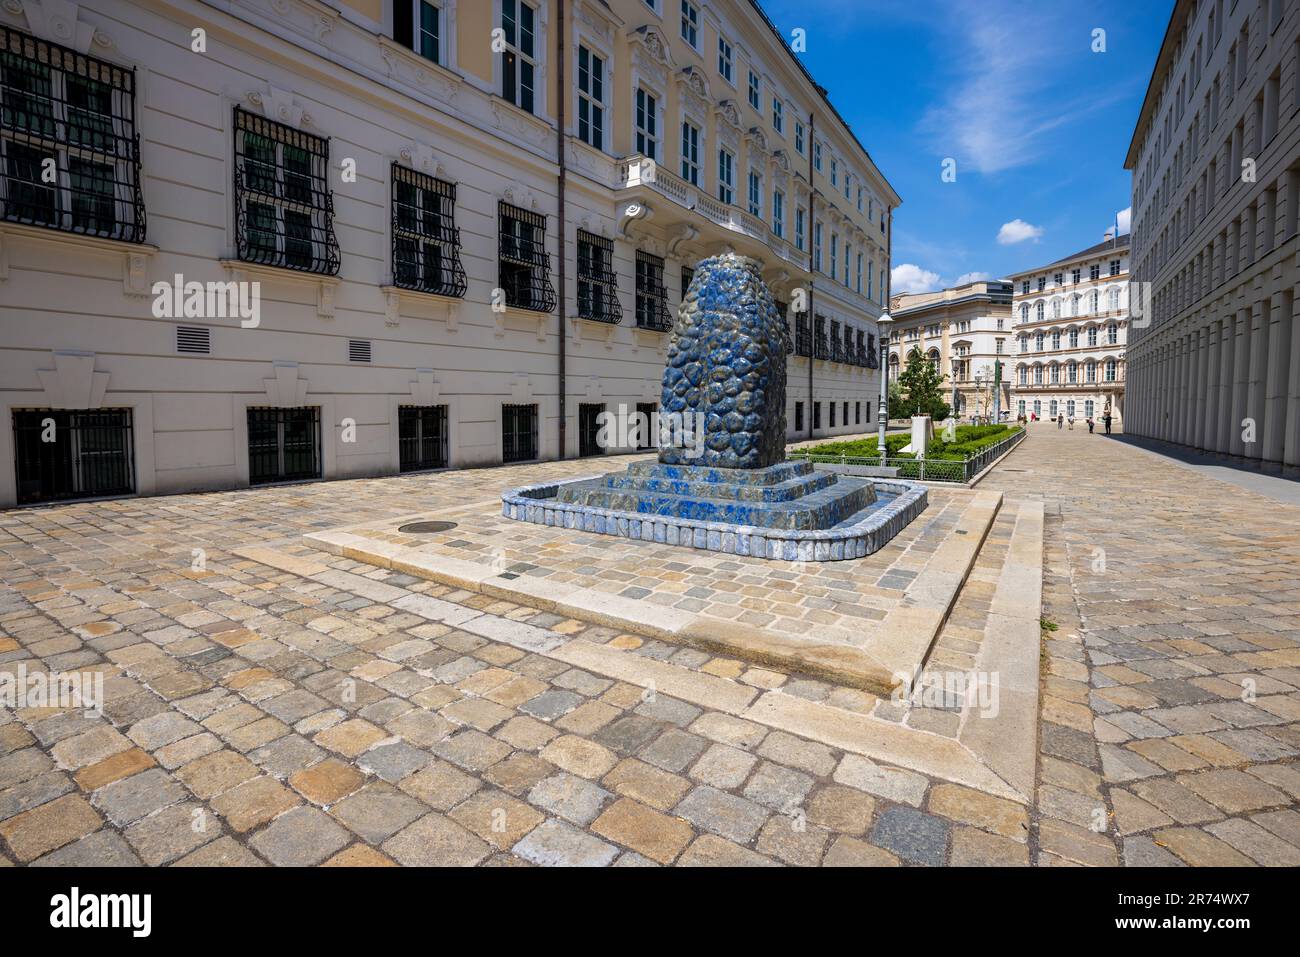 Lapis Lazuli Brunnen fontaine à Ballhausplatz, Vienne, Autriche Banque D'Images